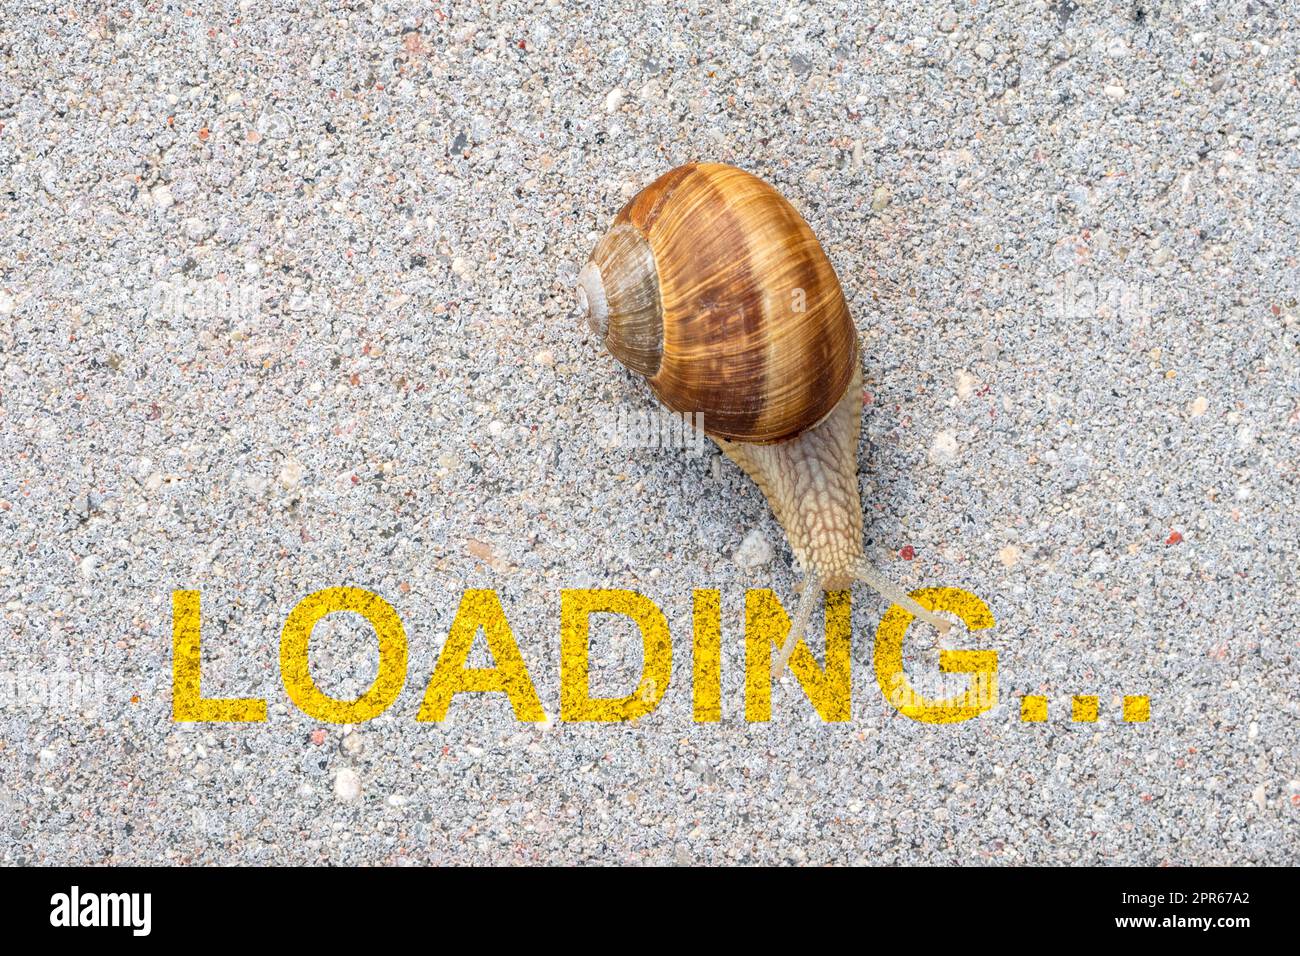 Internet speed slow immagini e fotografie stock ad alta risoluzione - Alamy